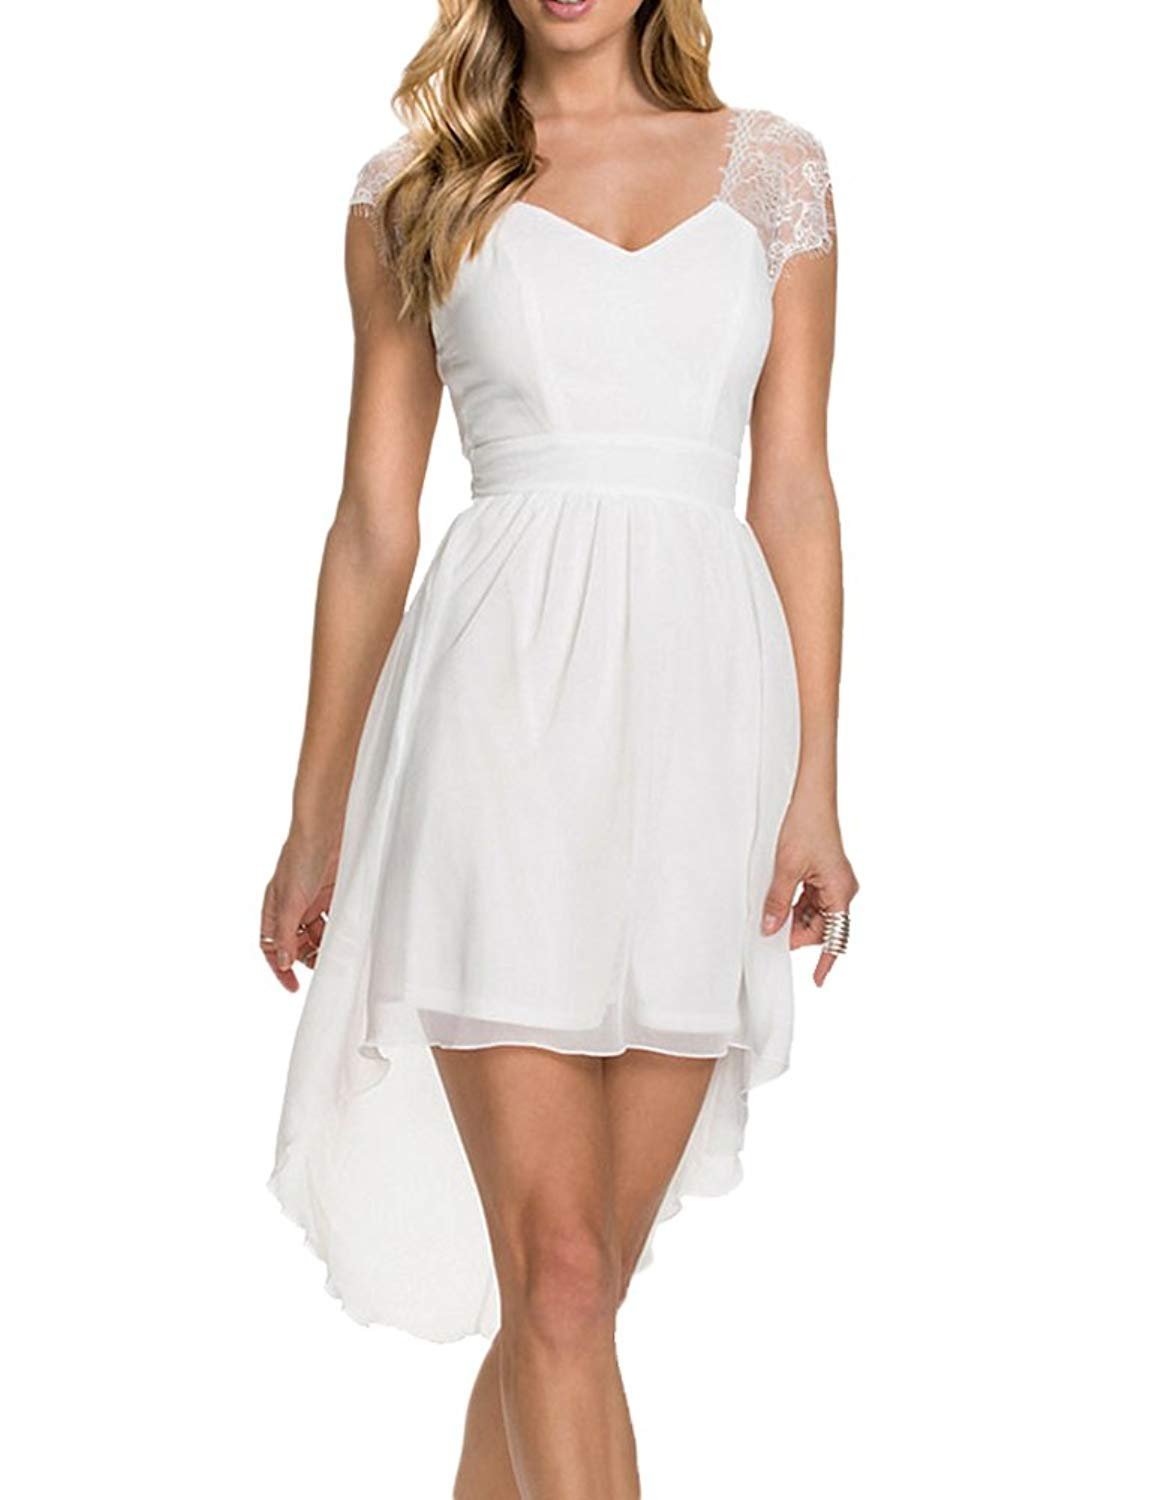 Недорогие белые платья. Белое платье. Легкие платья. Белое короткое платье. Белый плат.